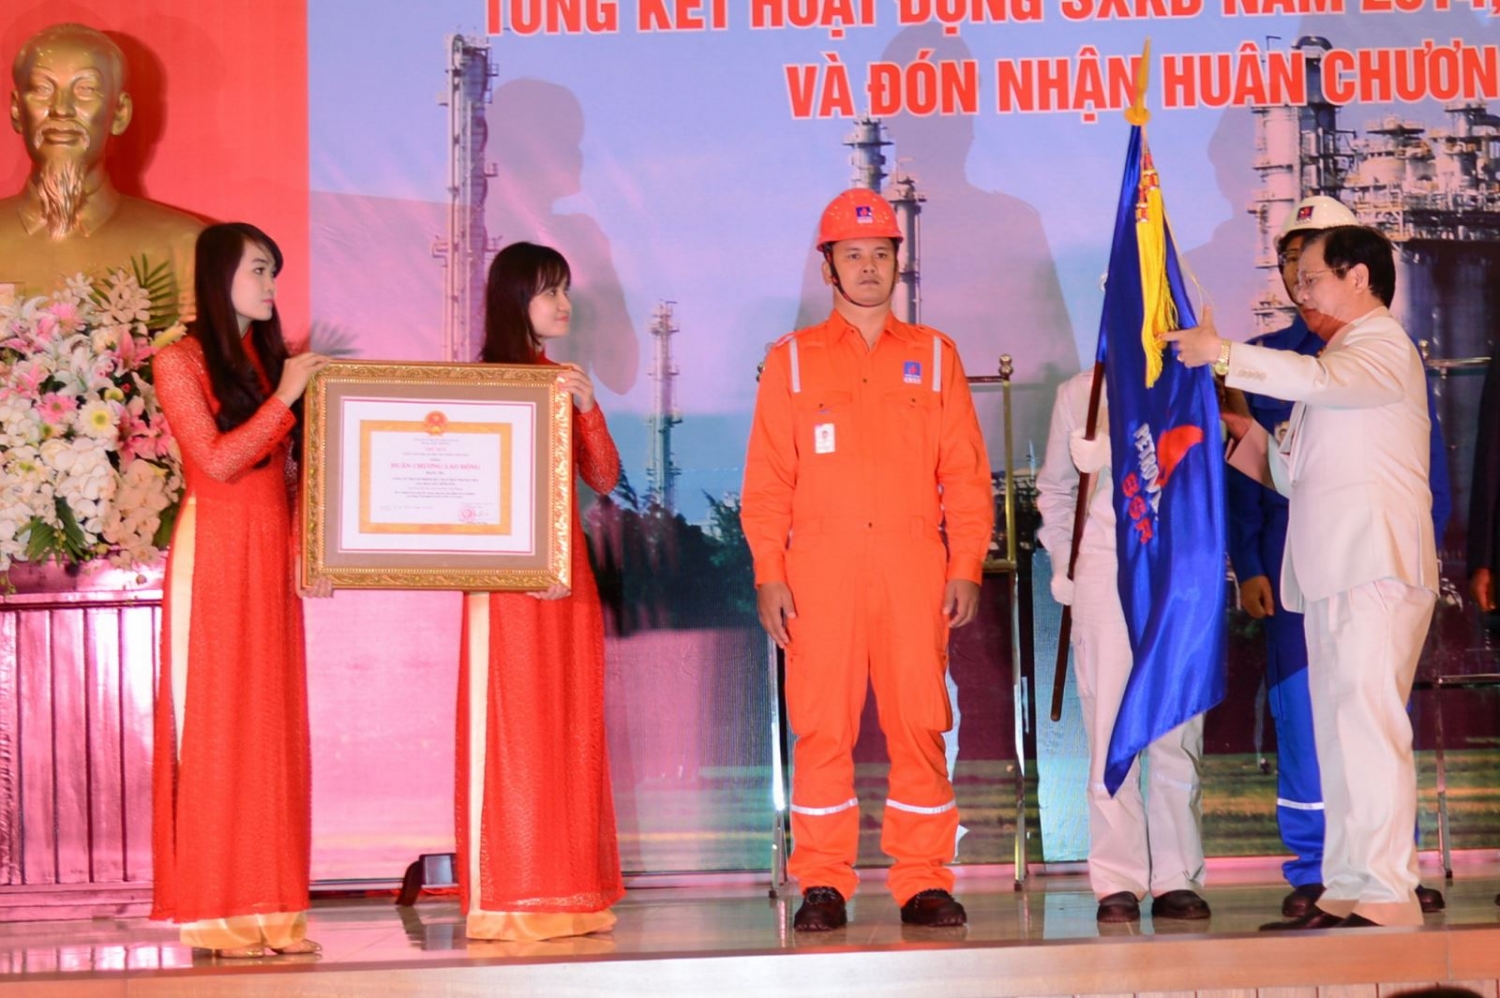 BSR kỷ niệm 13 năm ngày xuất dòng sản phẩm “Made in Vietnam” đầu tiên